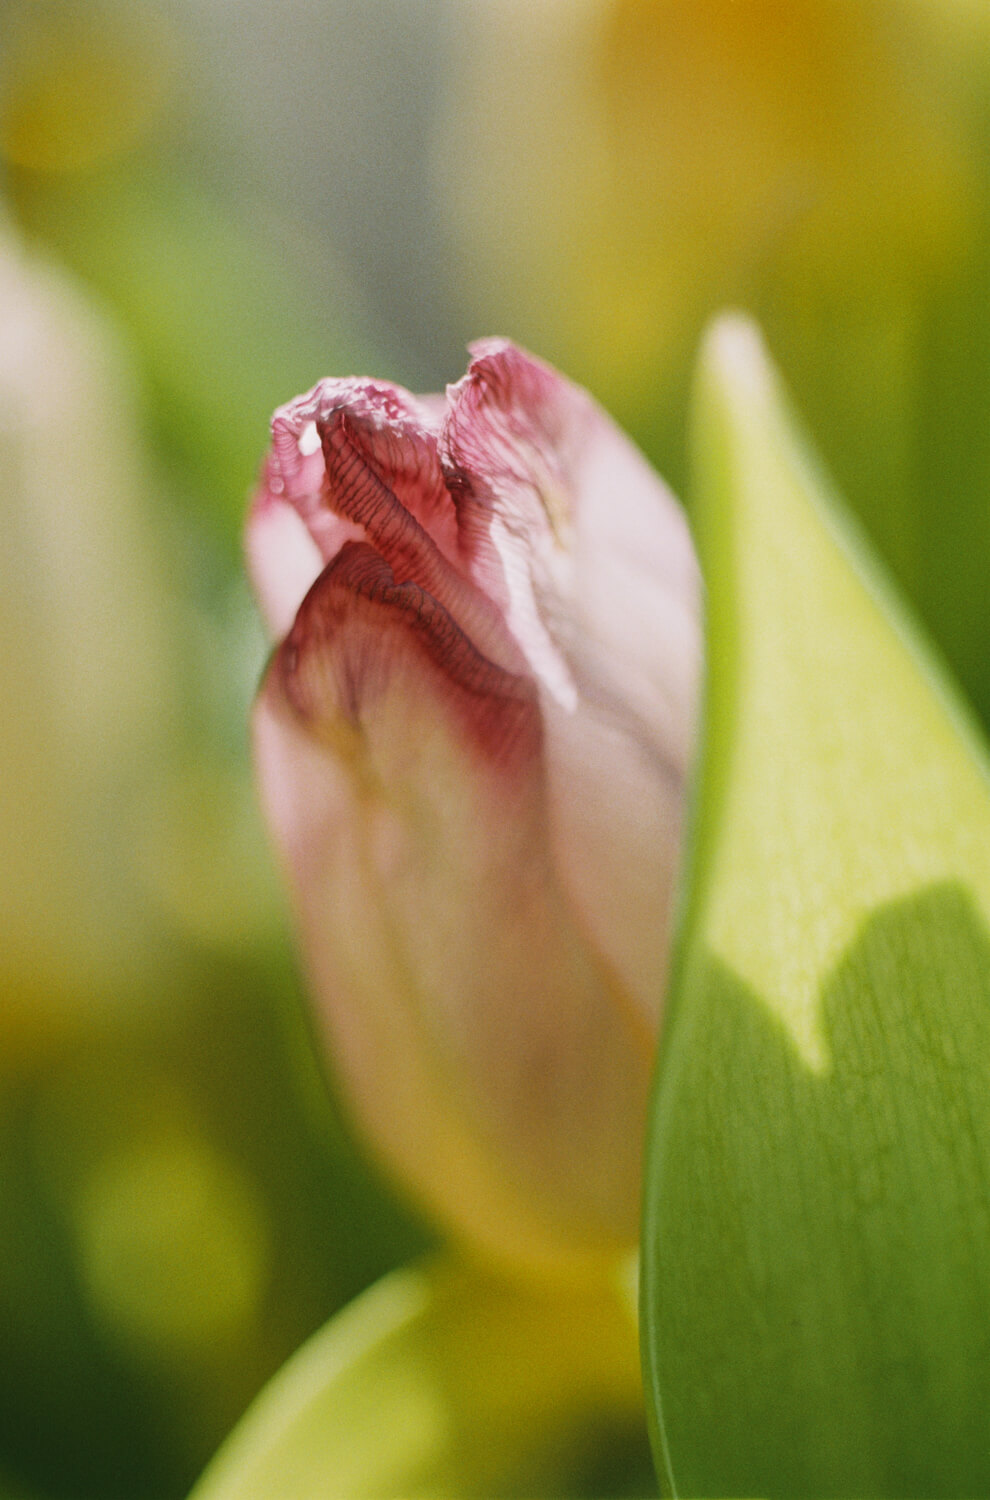 5 Cadres de... Tulipes sur Fujicolor C200 surexposé (Leica R3, Macro-Elmarit 60mm f / 2.8 ) - par Charles Mutter